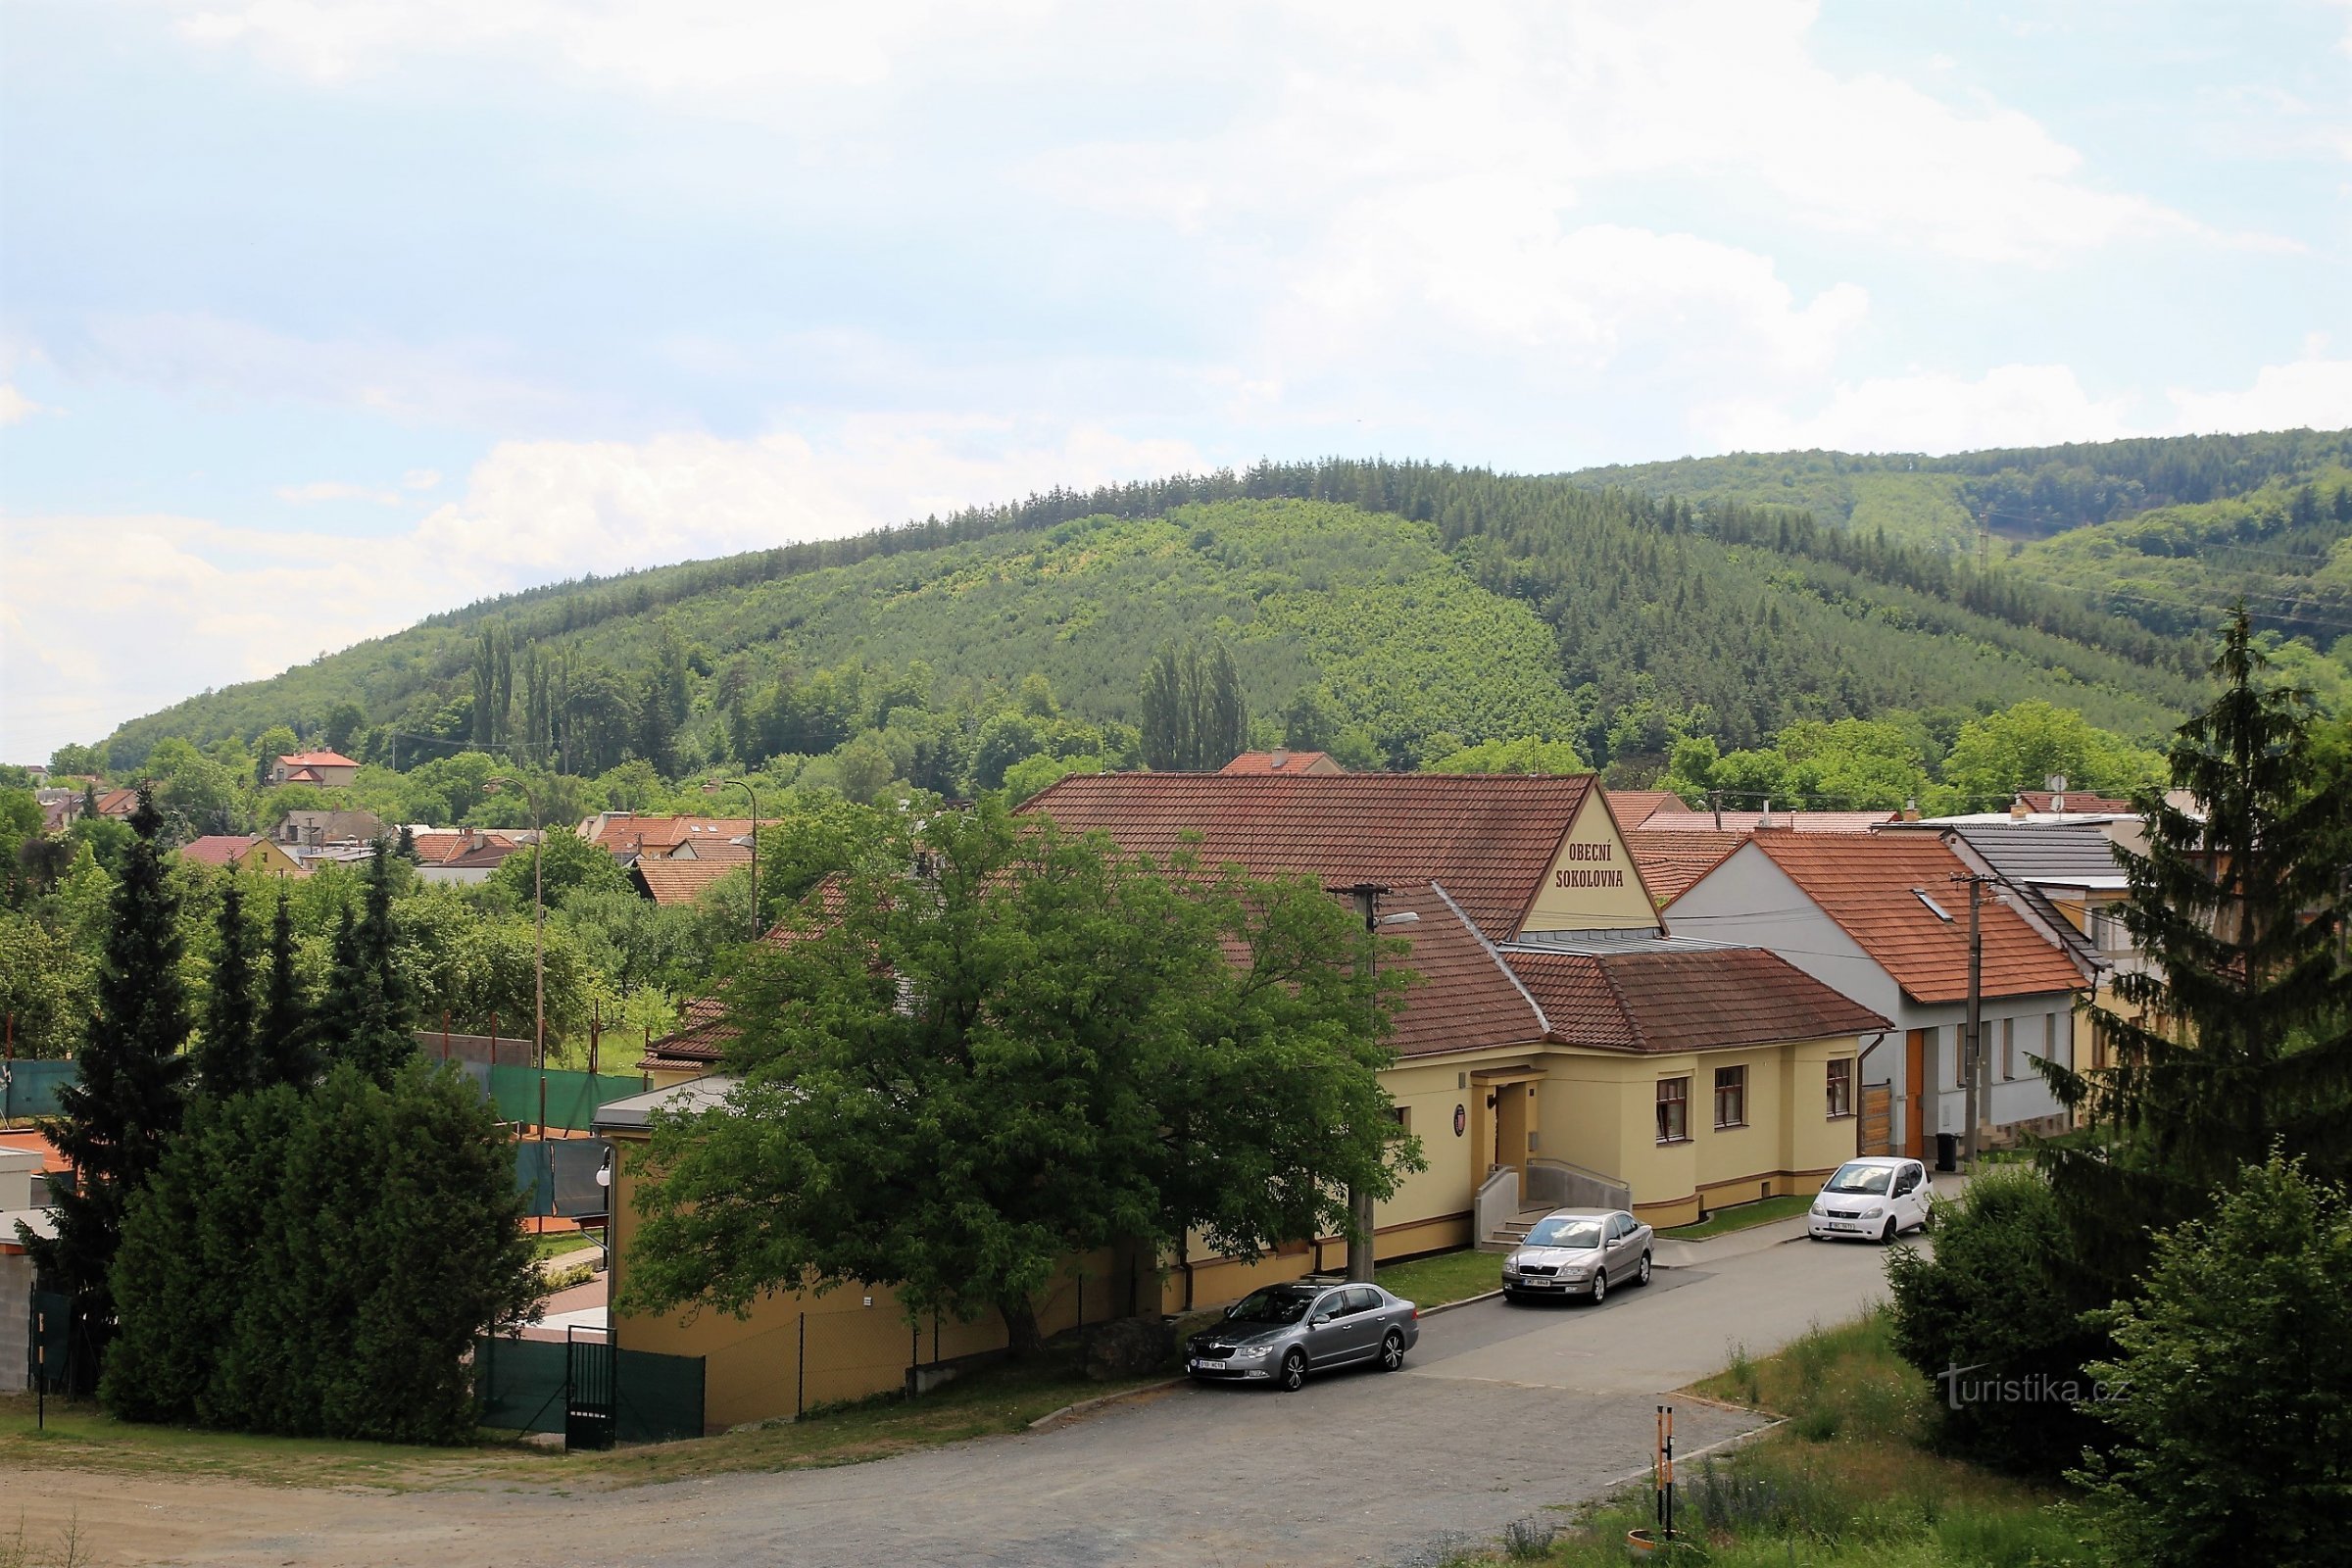 Quang cảnh ngôi làng và đỉnh núi đặc biệt của Ostrá hora